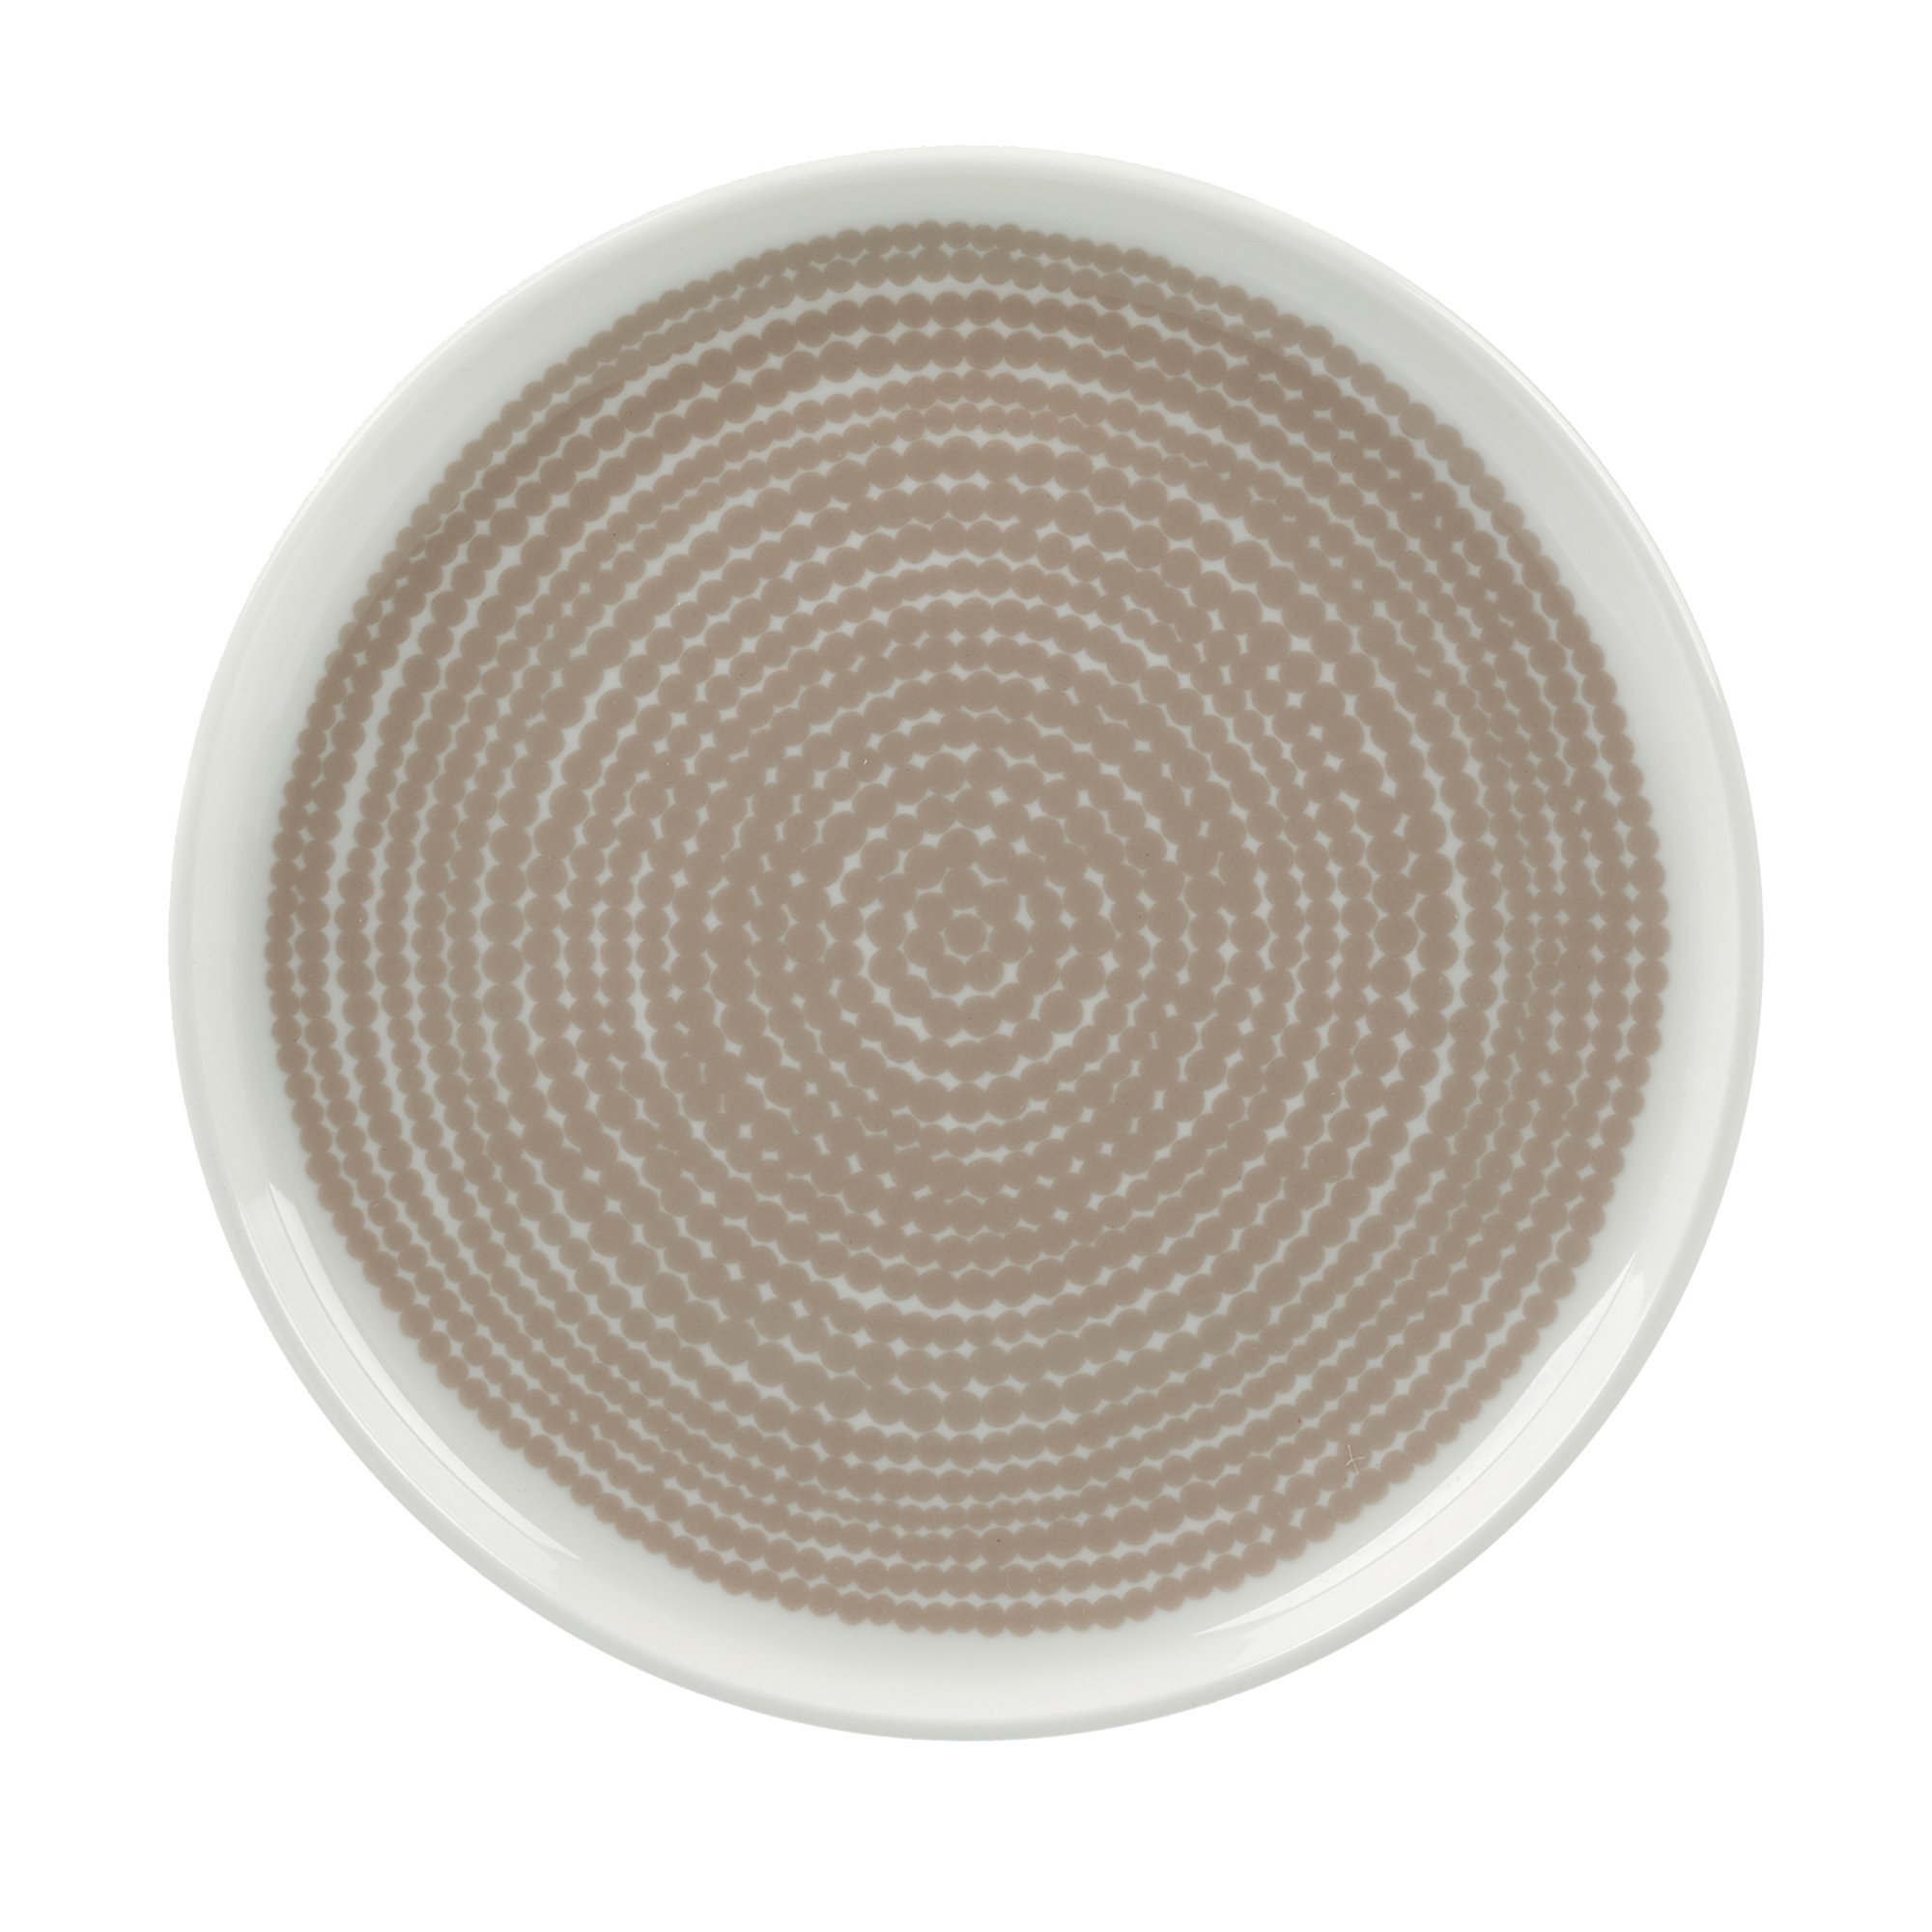 Marimekko Siirtolapuutarha tallerken 13,5 cm, hvid/beige